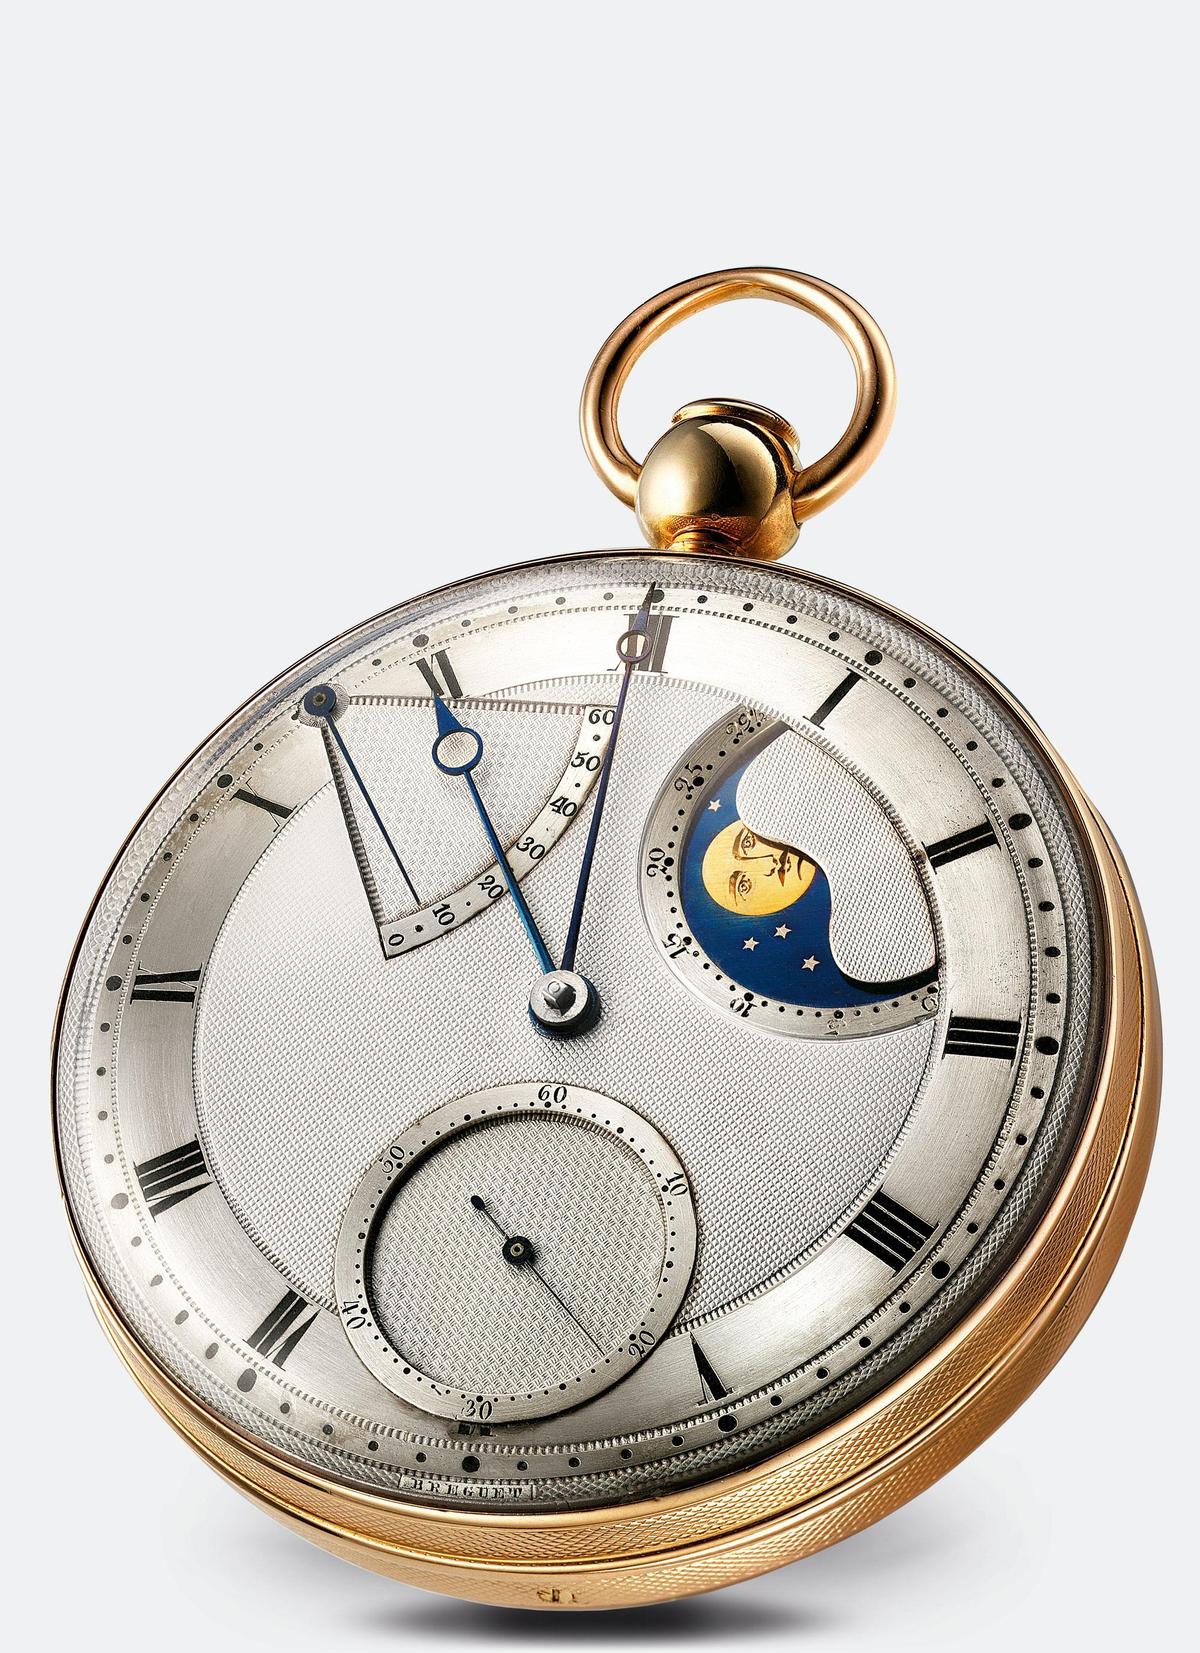 鐘錶專題 腕上天文學 手錶不只是手錶 更是精密天文儀器